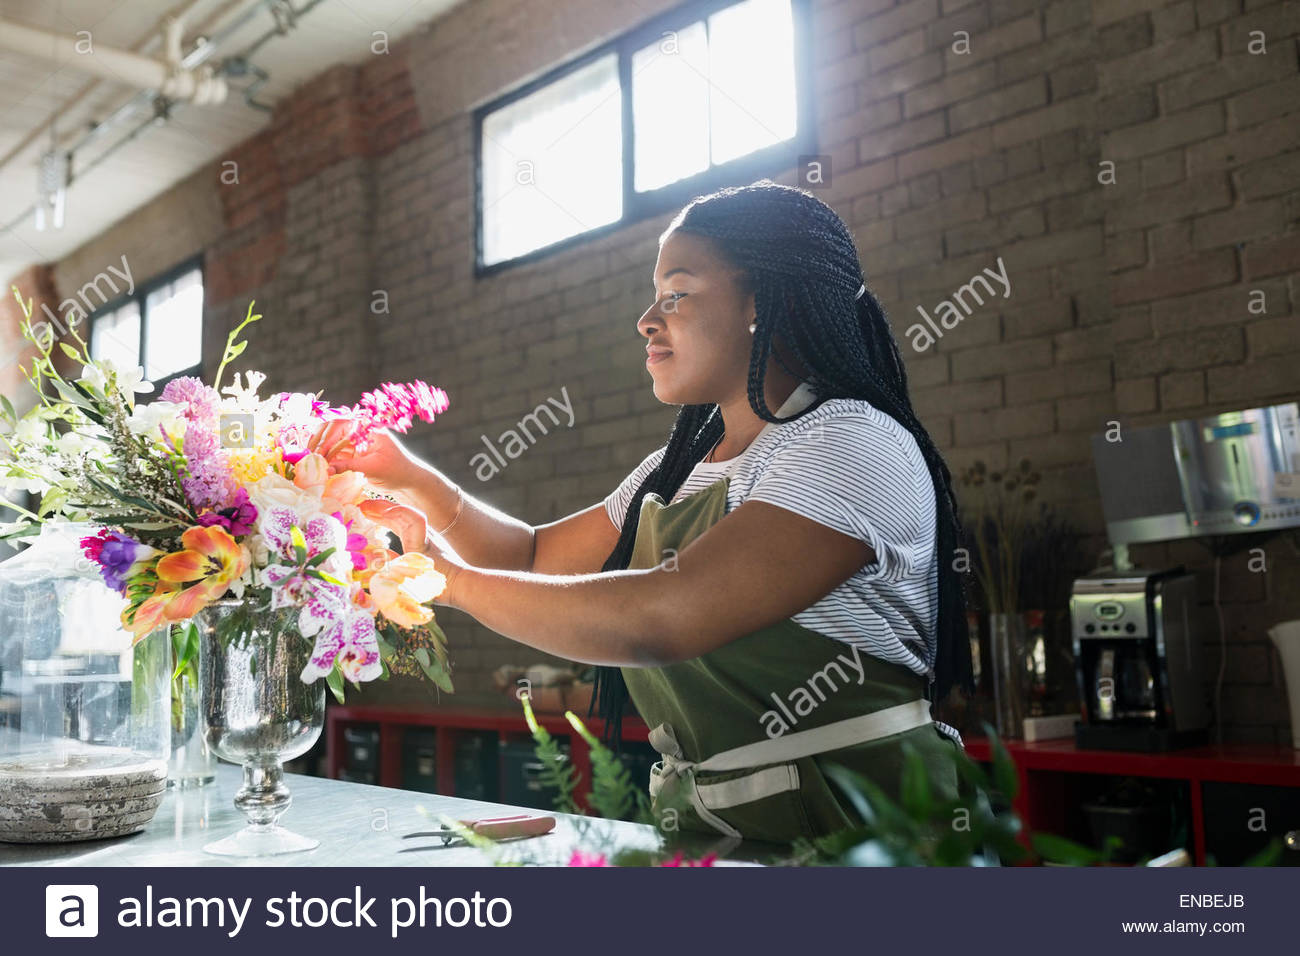 Florist arranging bouquet in flower shop Stock Photo